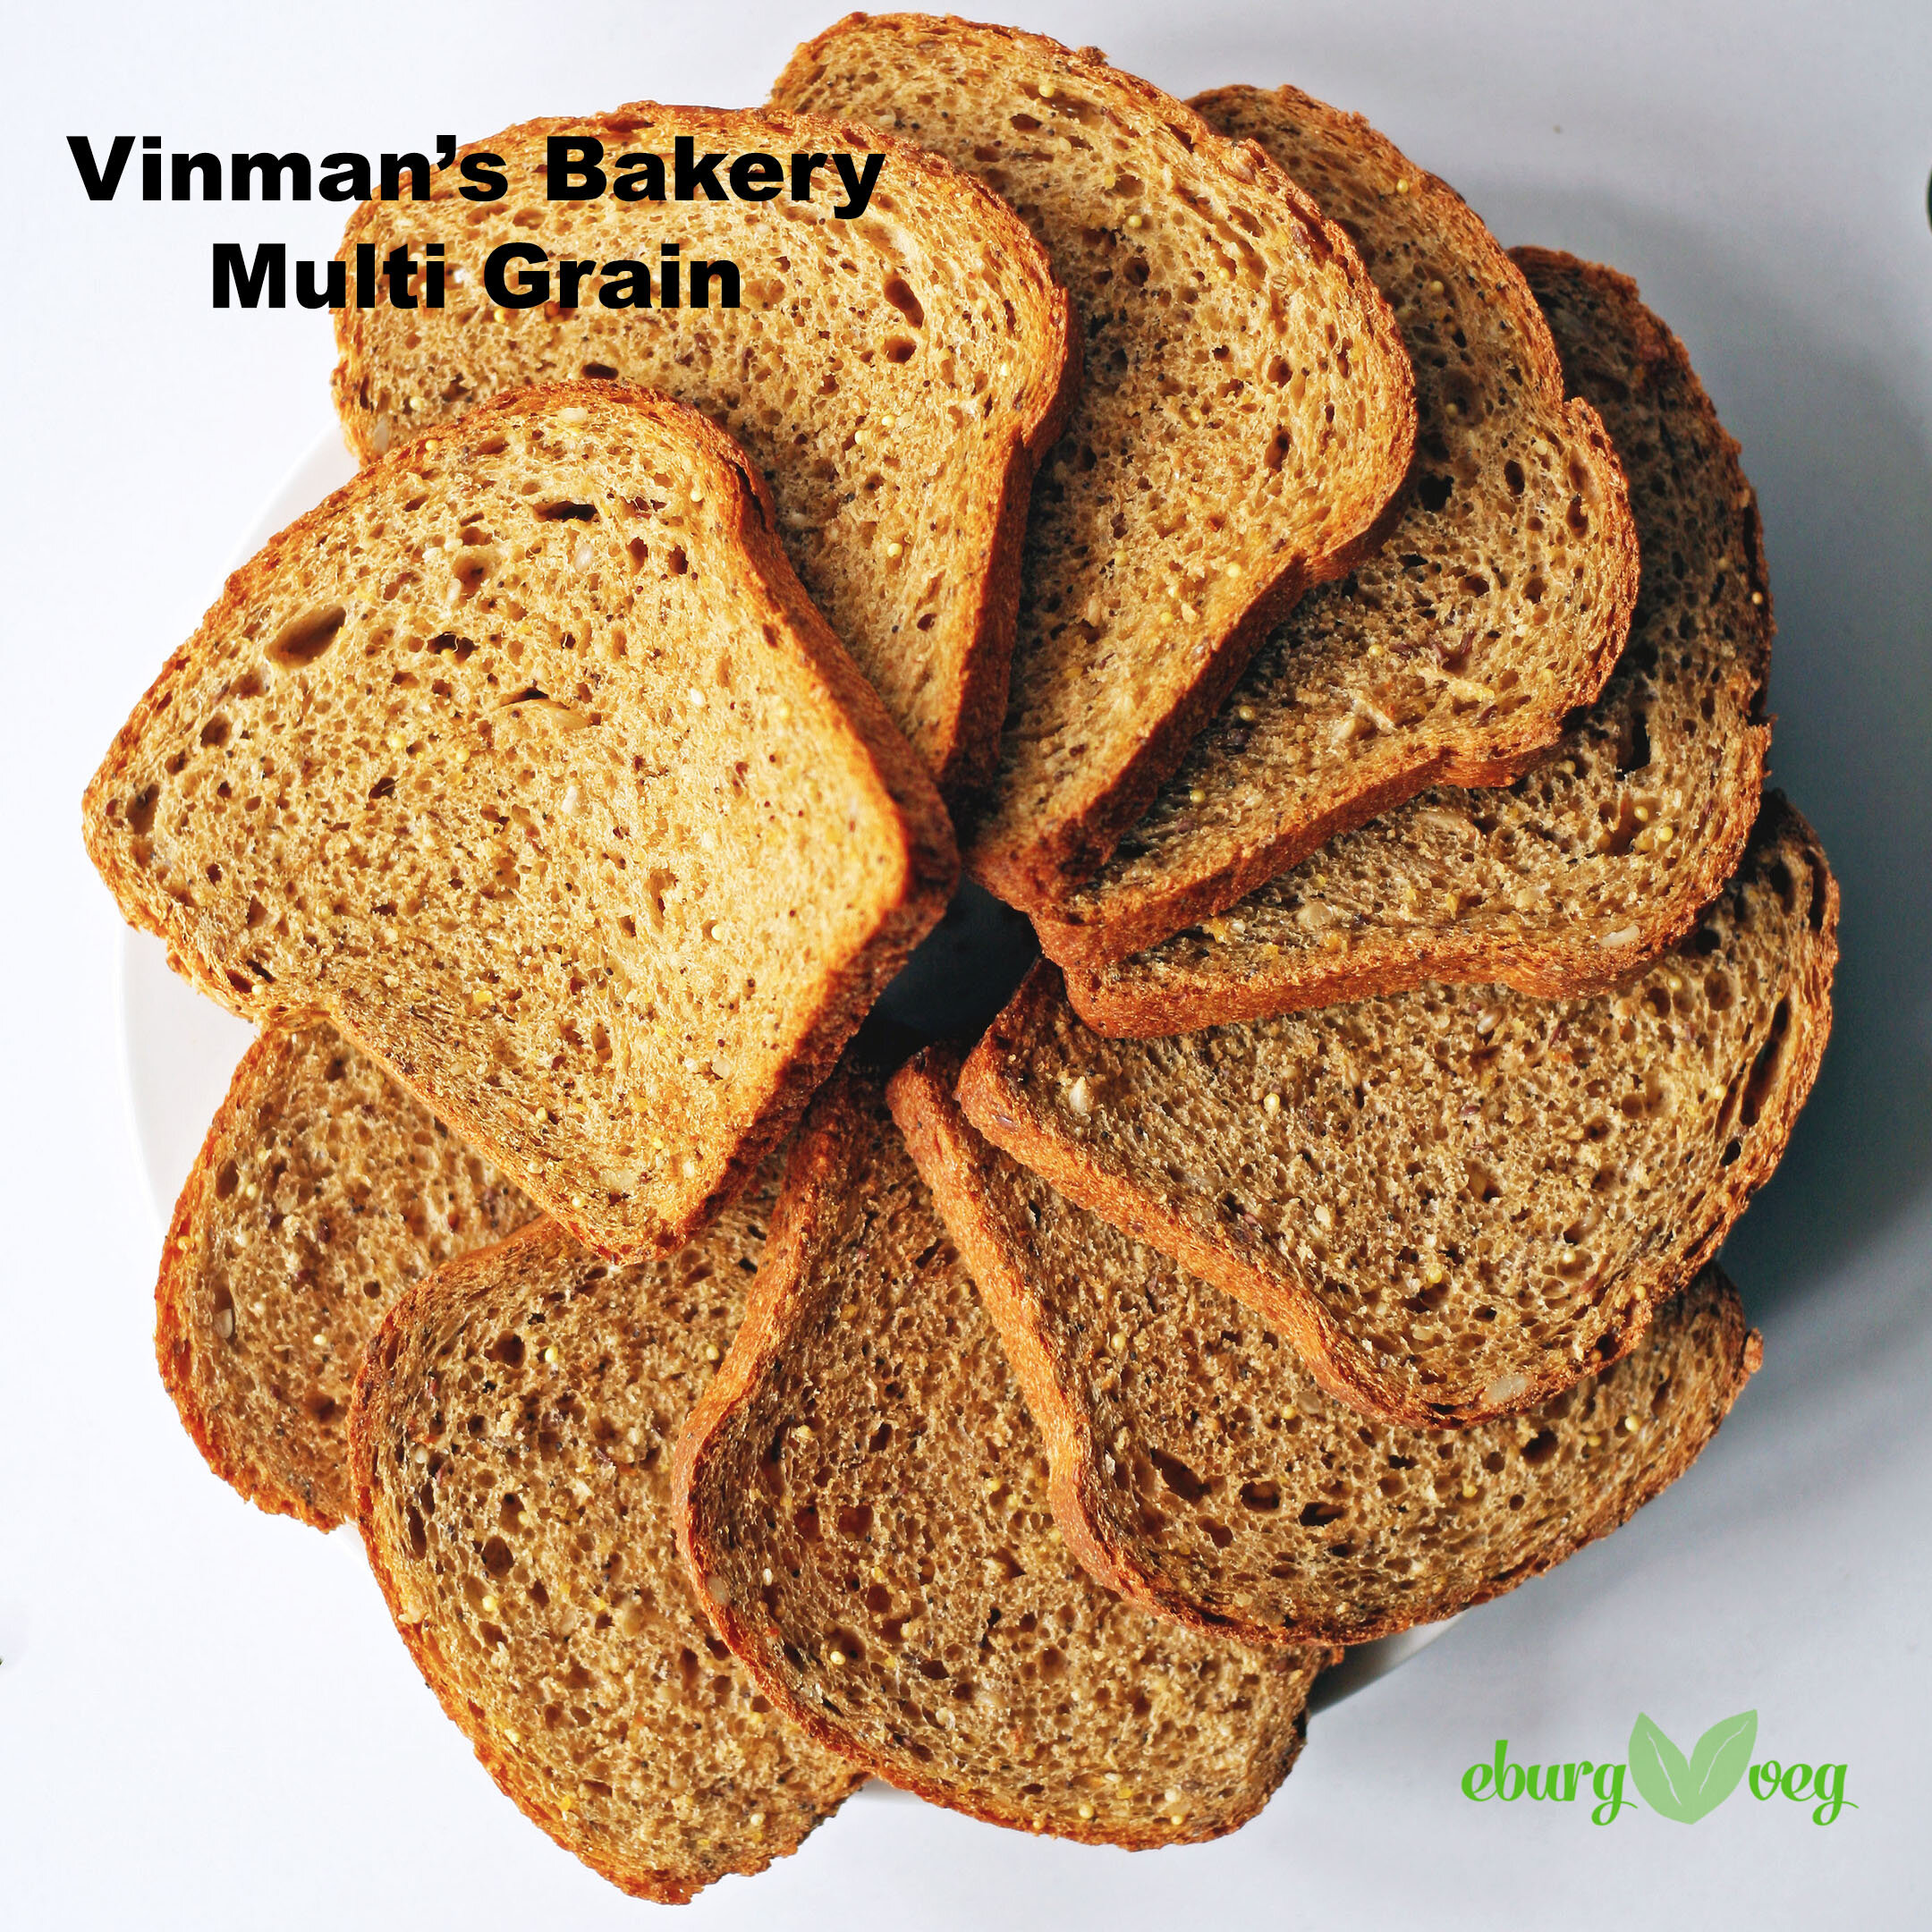 vinman's multi grain.jpg